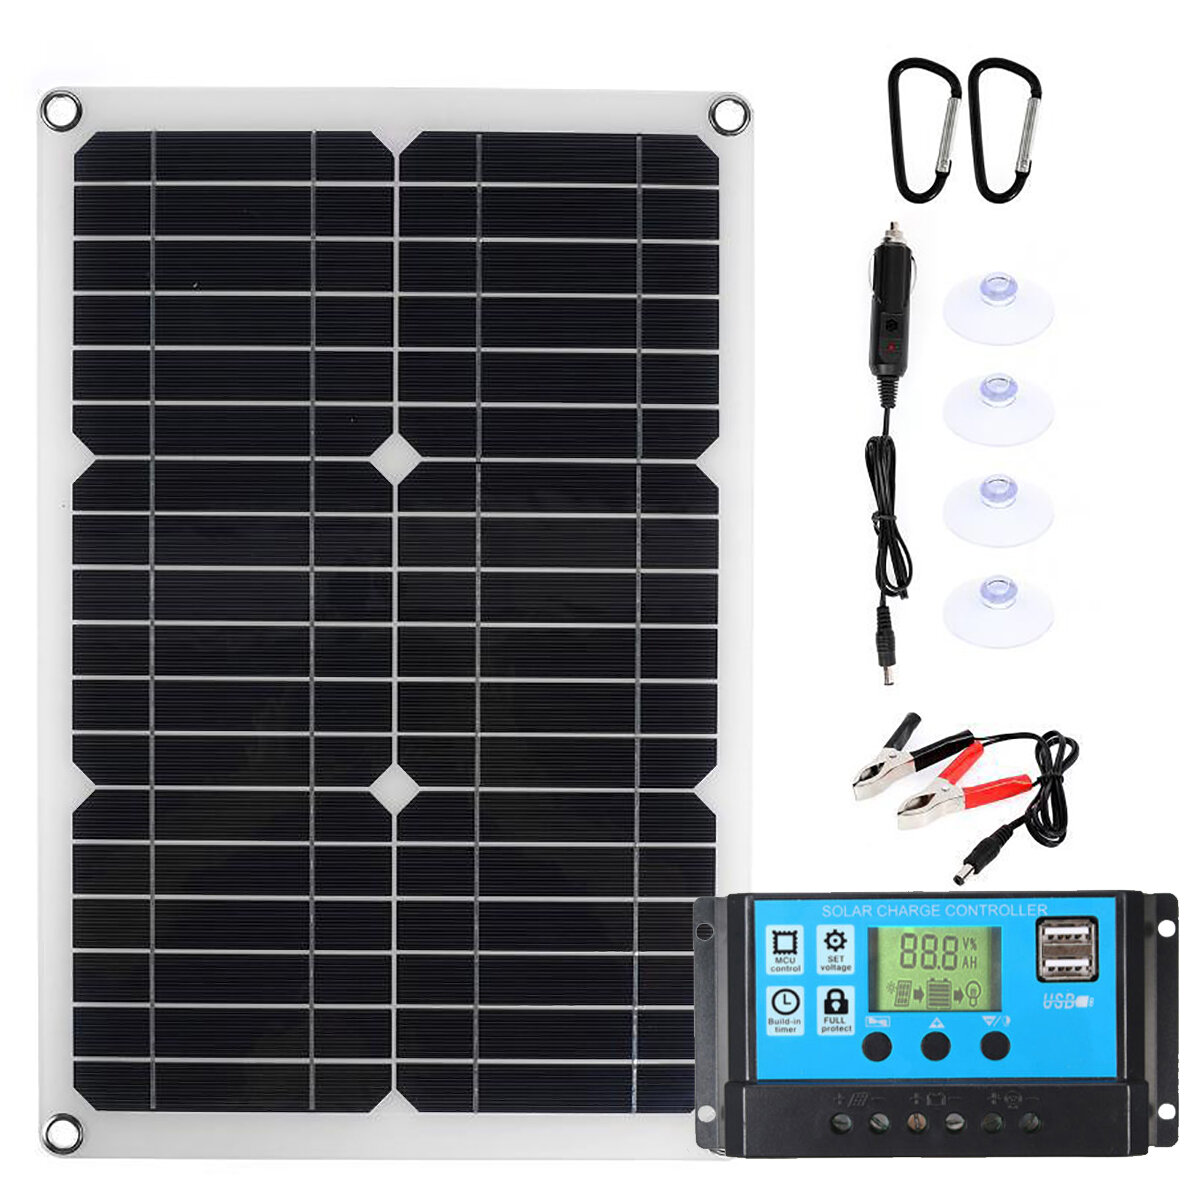 Portatile 30 W 18 v solare Pannello Multi-funzione solare Kit Caricatore Carica Fotovoltaica Di Emergenza Impermeabile Per I Viaggi All'aperto campeggio RV